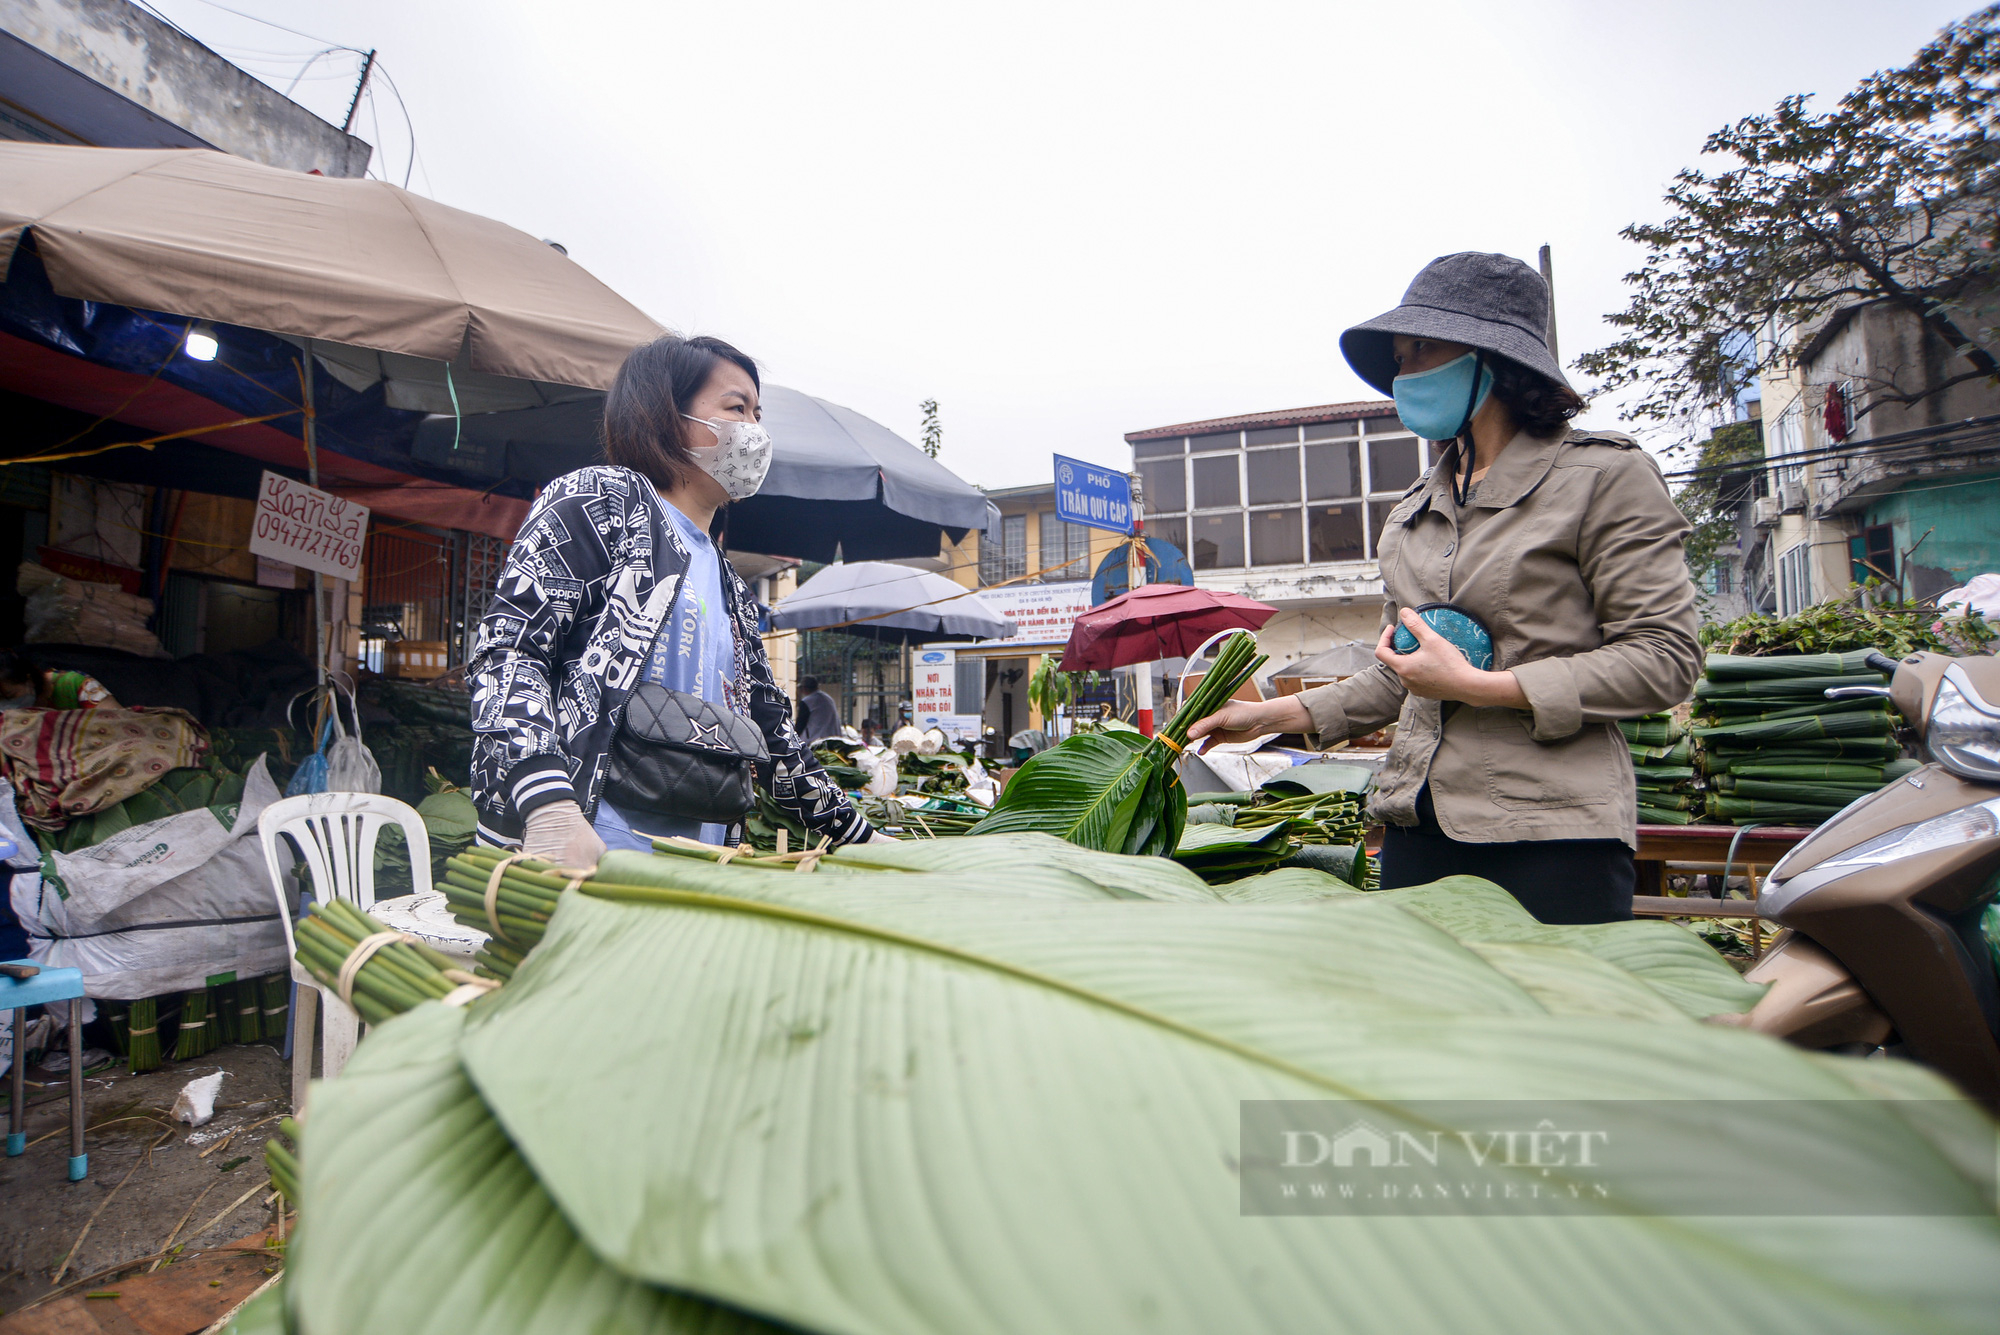  Chợ lá dong lâu đời ở Hà Nội dù vắng khách nhưng giá vẫn cao - Ảnh 8.